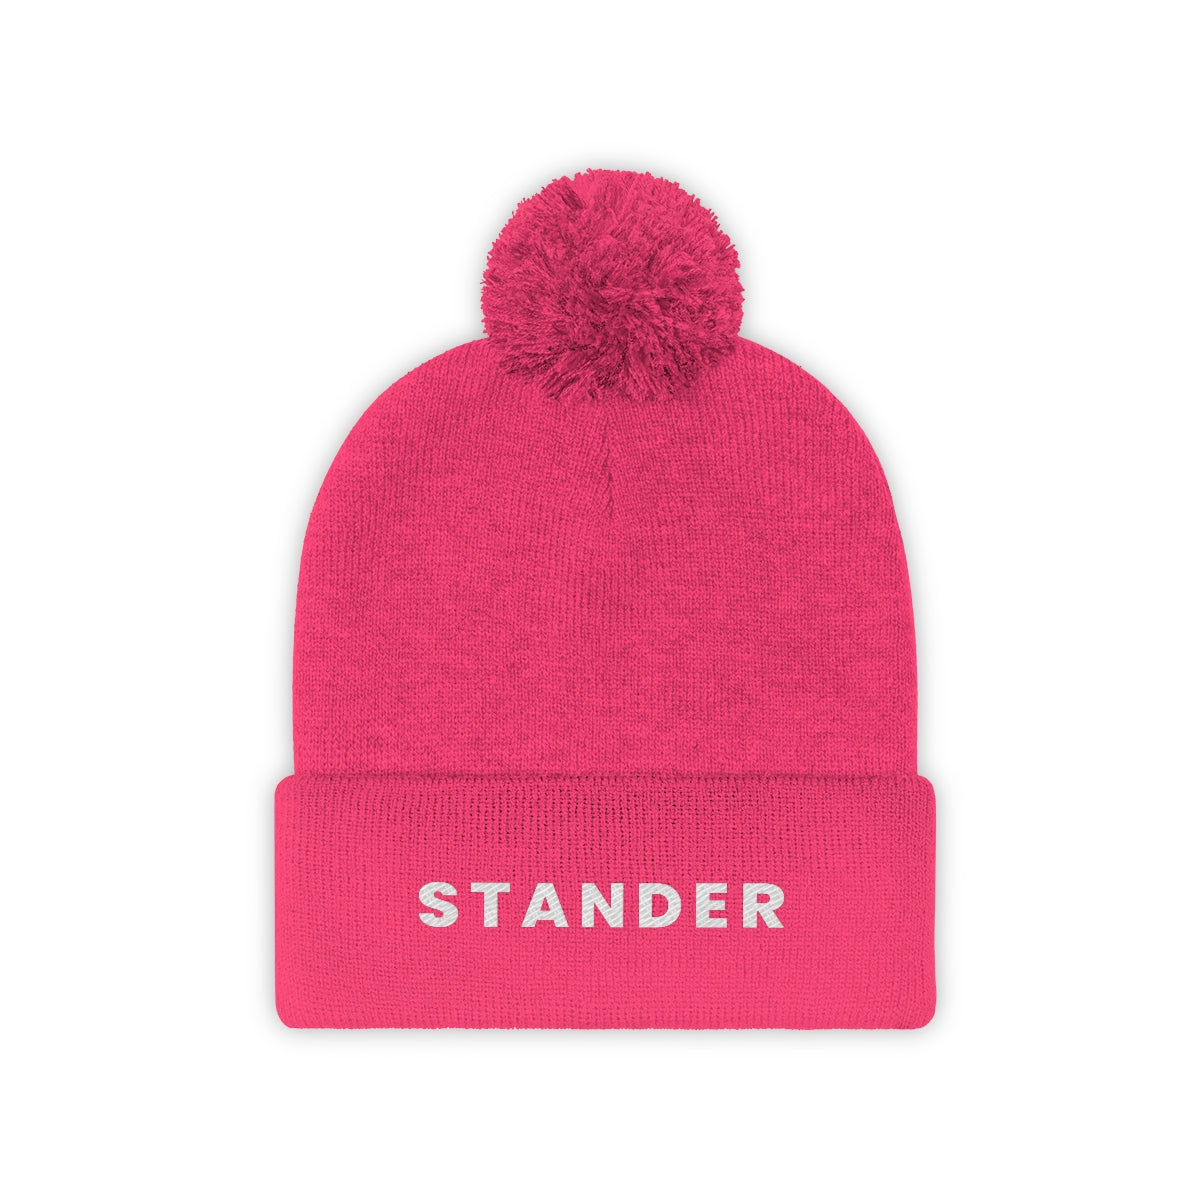 "Stander" Pom Pom Beanie (Pink, Black, & Black/Graphite Available)